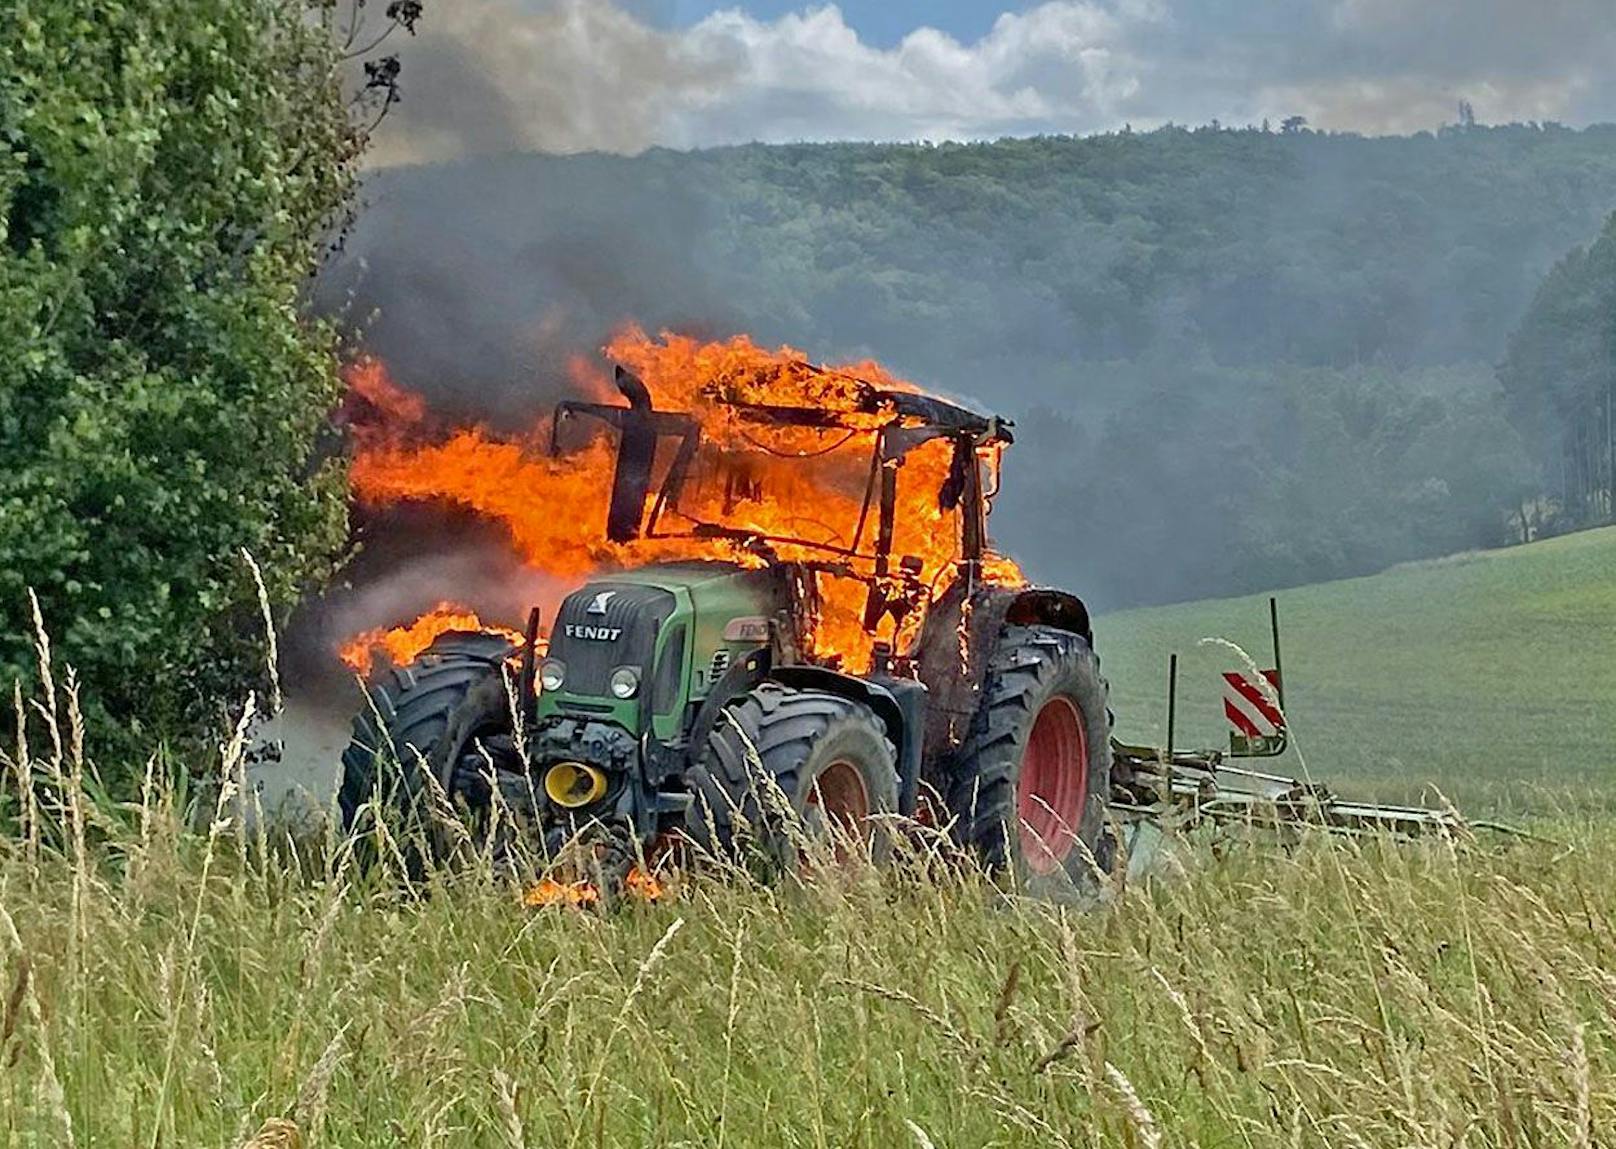 Batterie fing Feuer! Traktor ging in Flammen auf